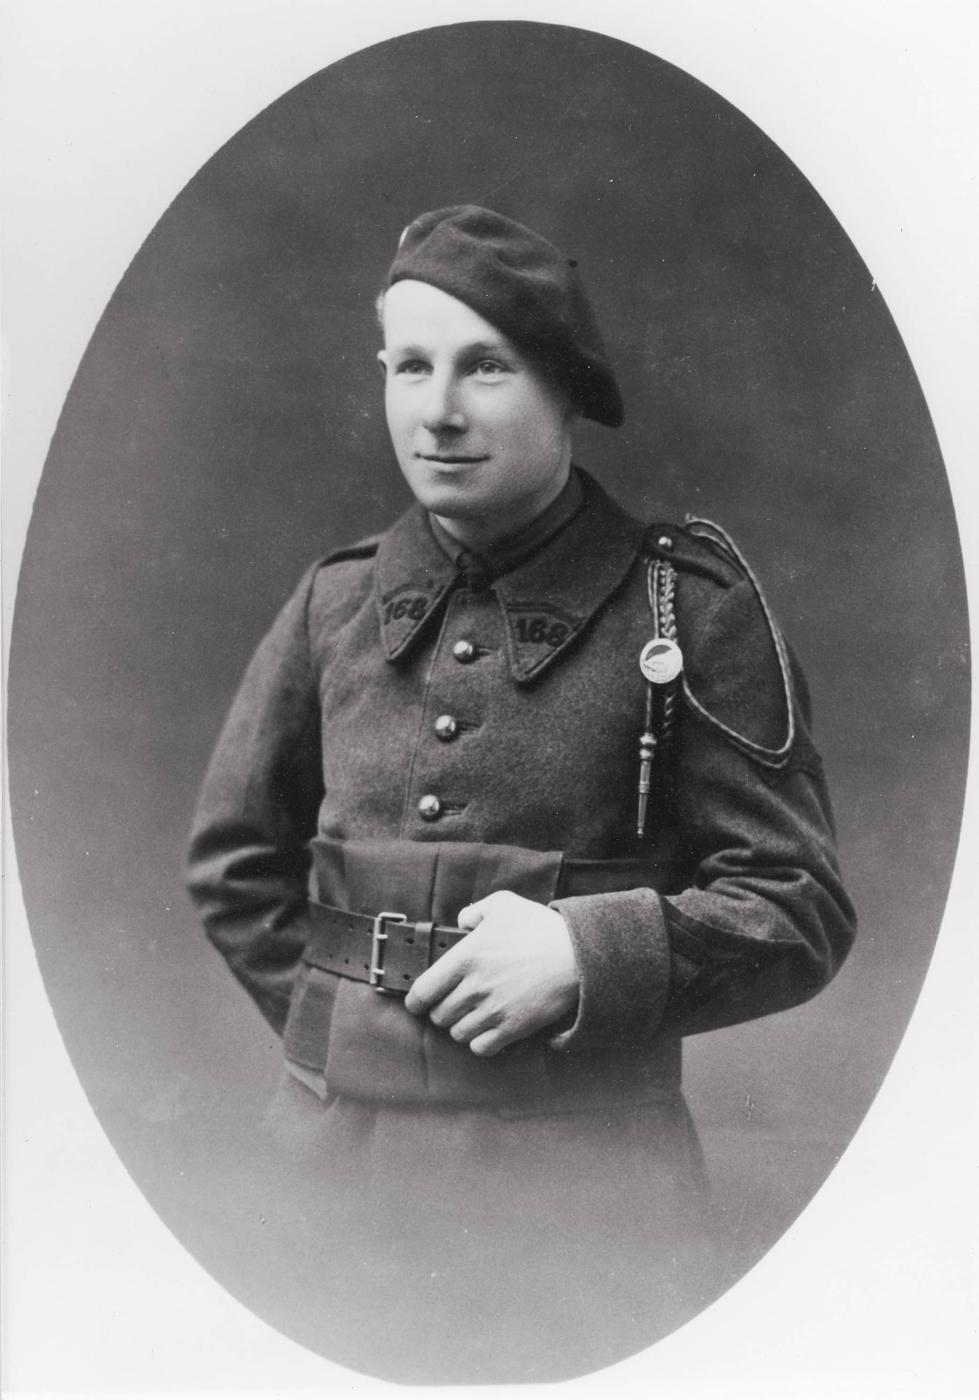 Ligne Maginot - 168° Régiment d'Infanterie de Forteresse (168° RIF) - Caporal Albert Herpin
Ouvrage du Kobenbusch
Photo antérieure à 1939